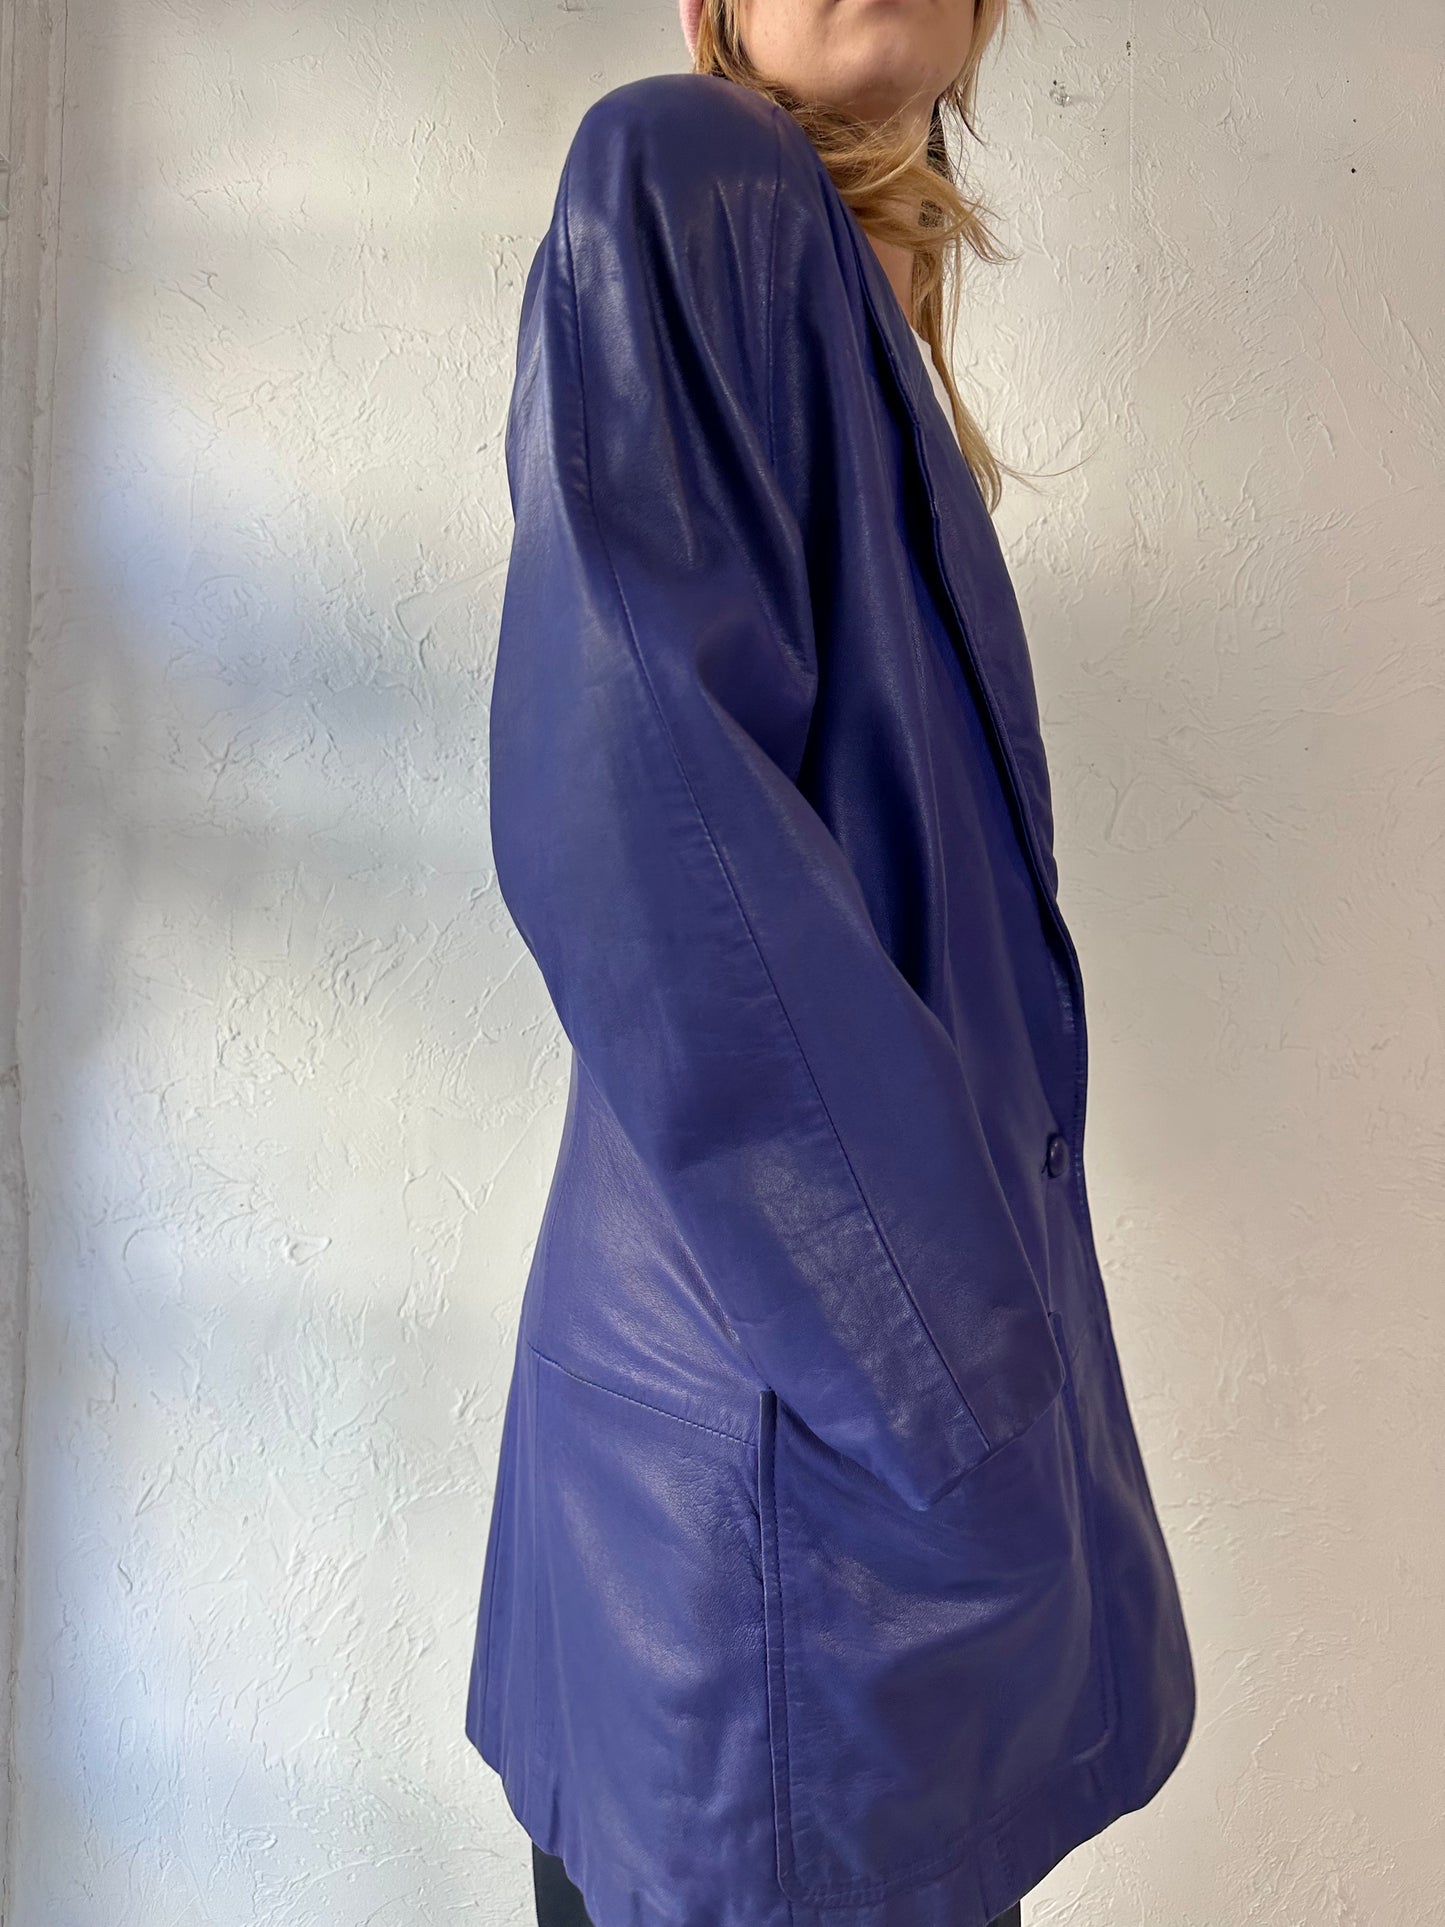 80s 'Reliable' Purple Leather Jacket / Medium